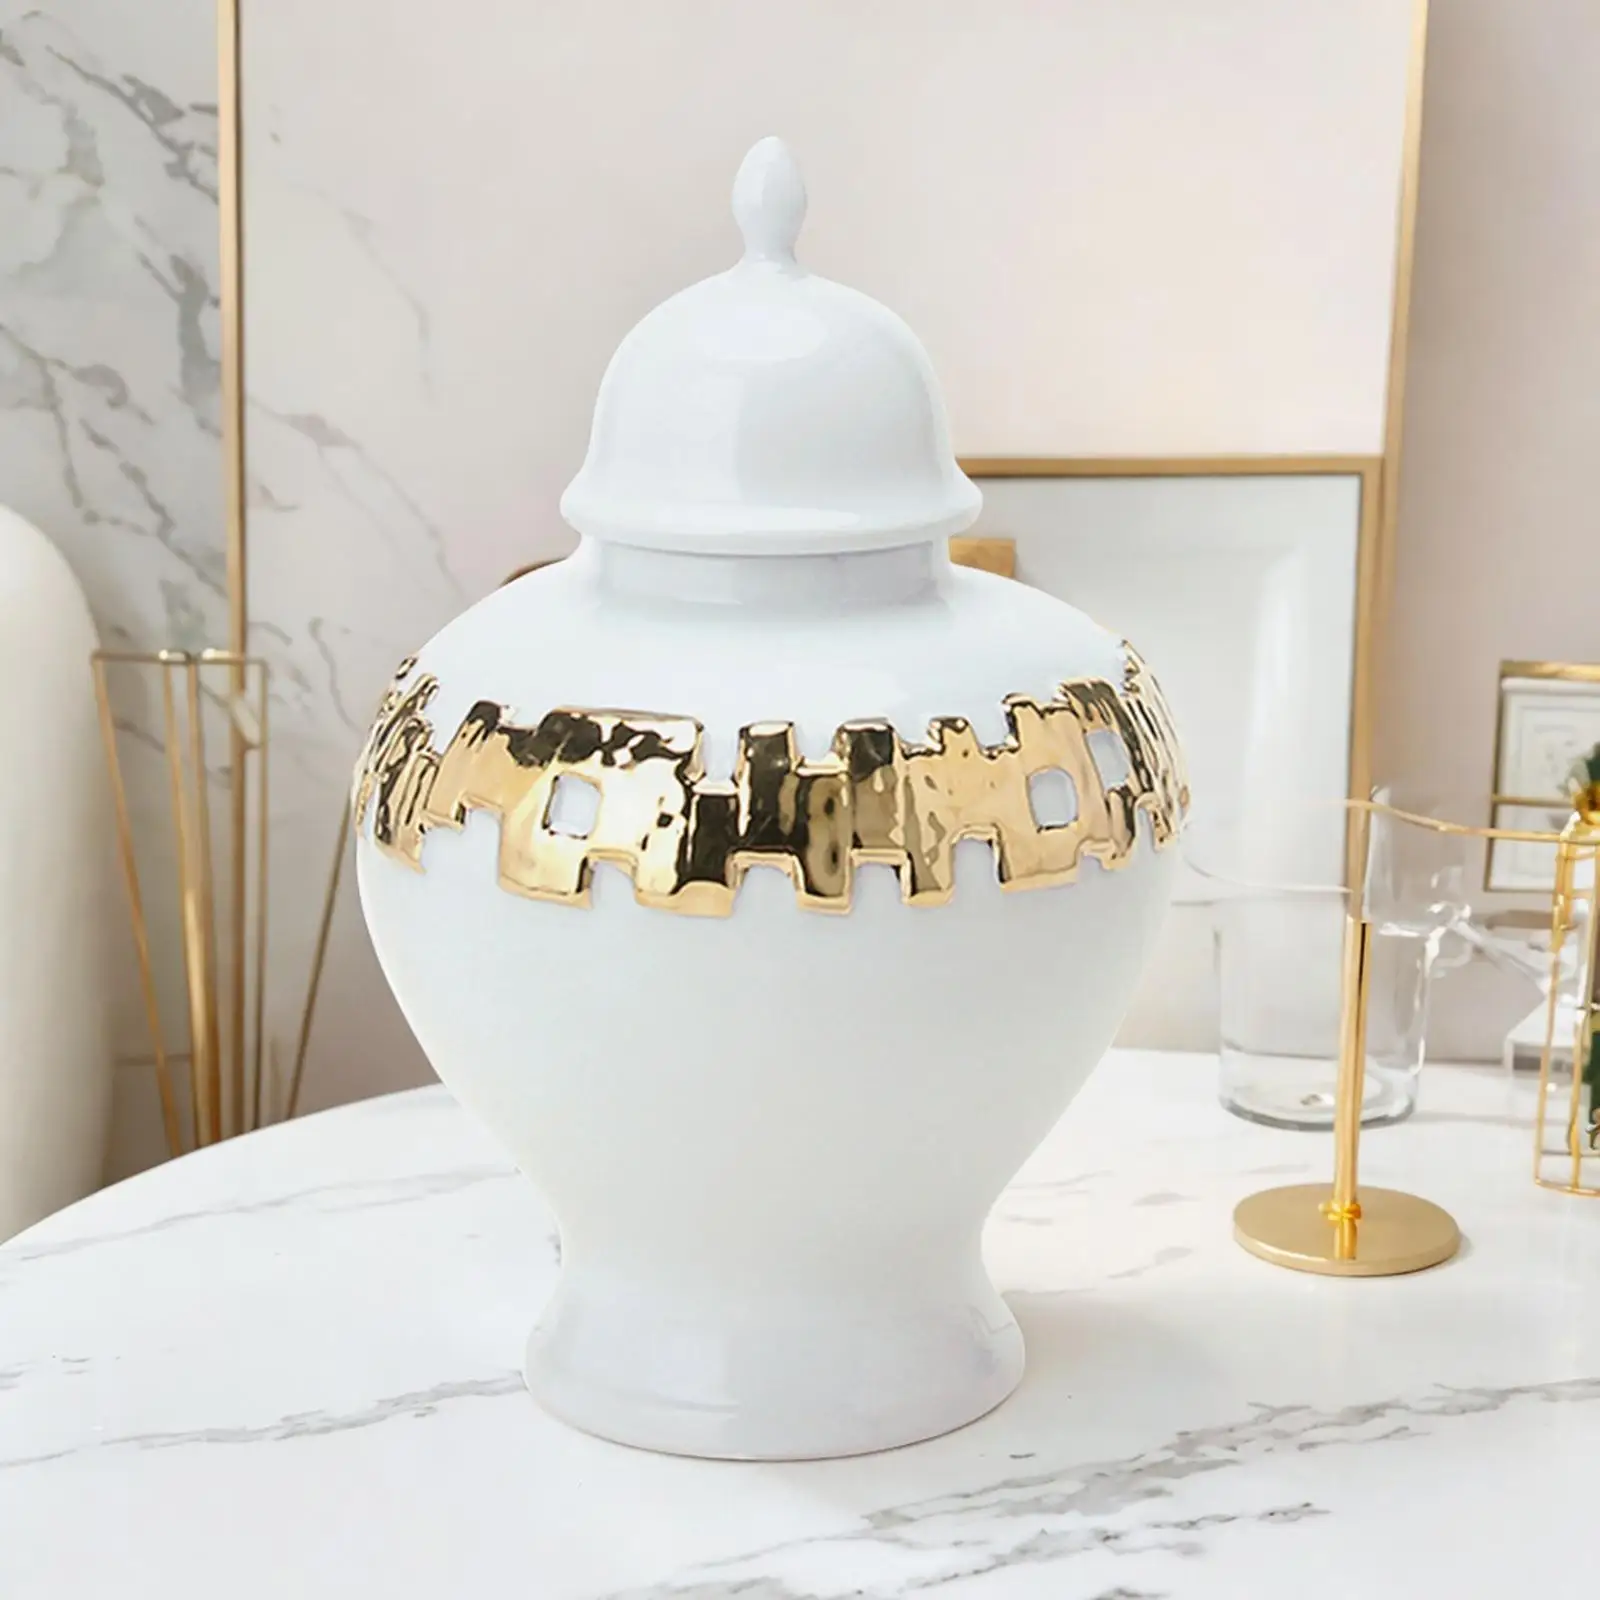 Ceramic Vase Ginger Jar with Lid Handicraft 18x27.5cm Fine Glaze Finish Delicate